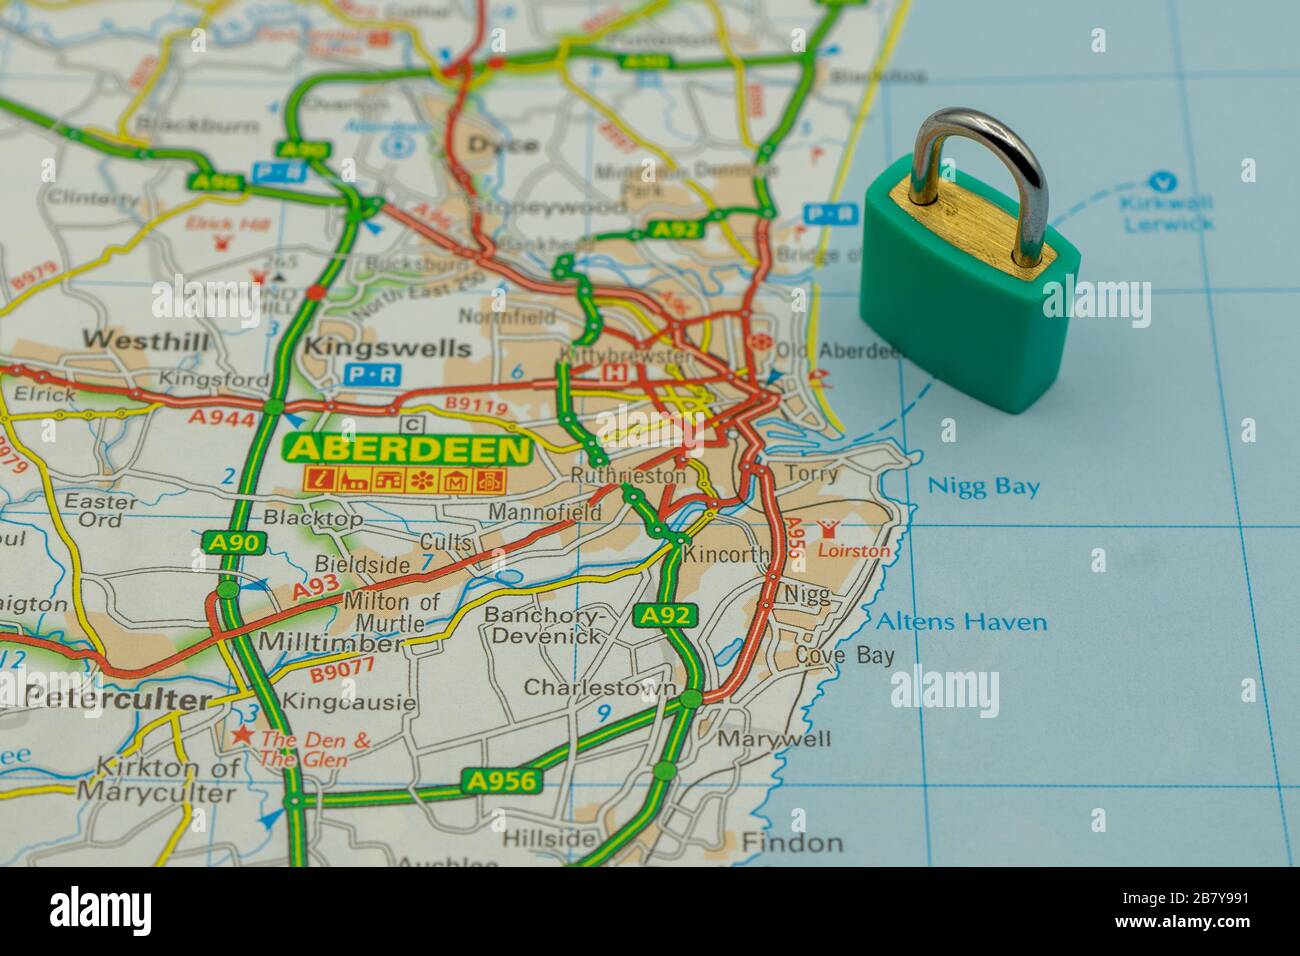 Aberdeen affiché sur une carte routière ou géographique avec un cadenas en haut pour représenter une ville en lock-down Banque D'Images